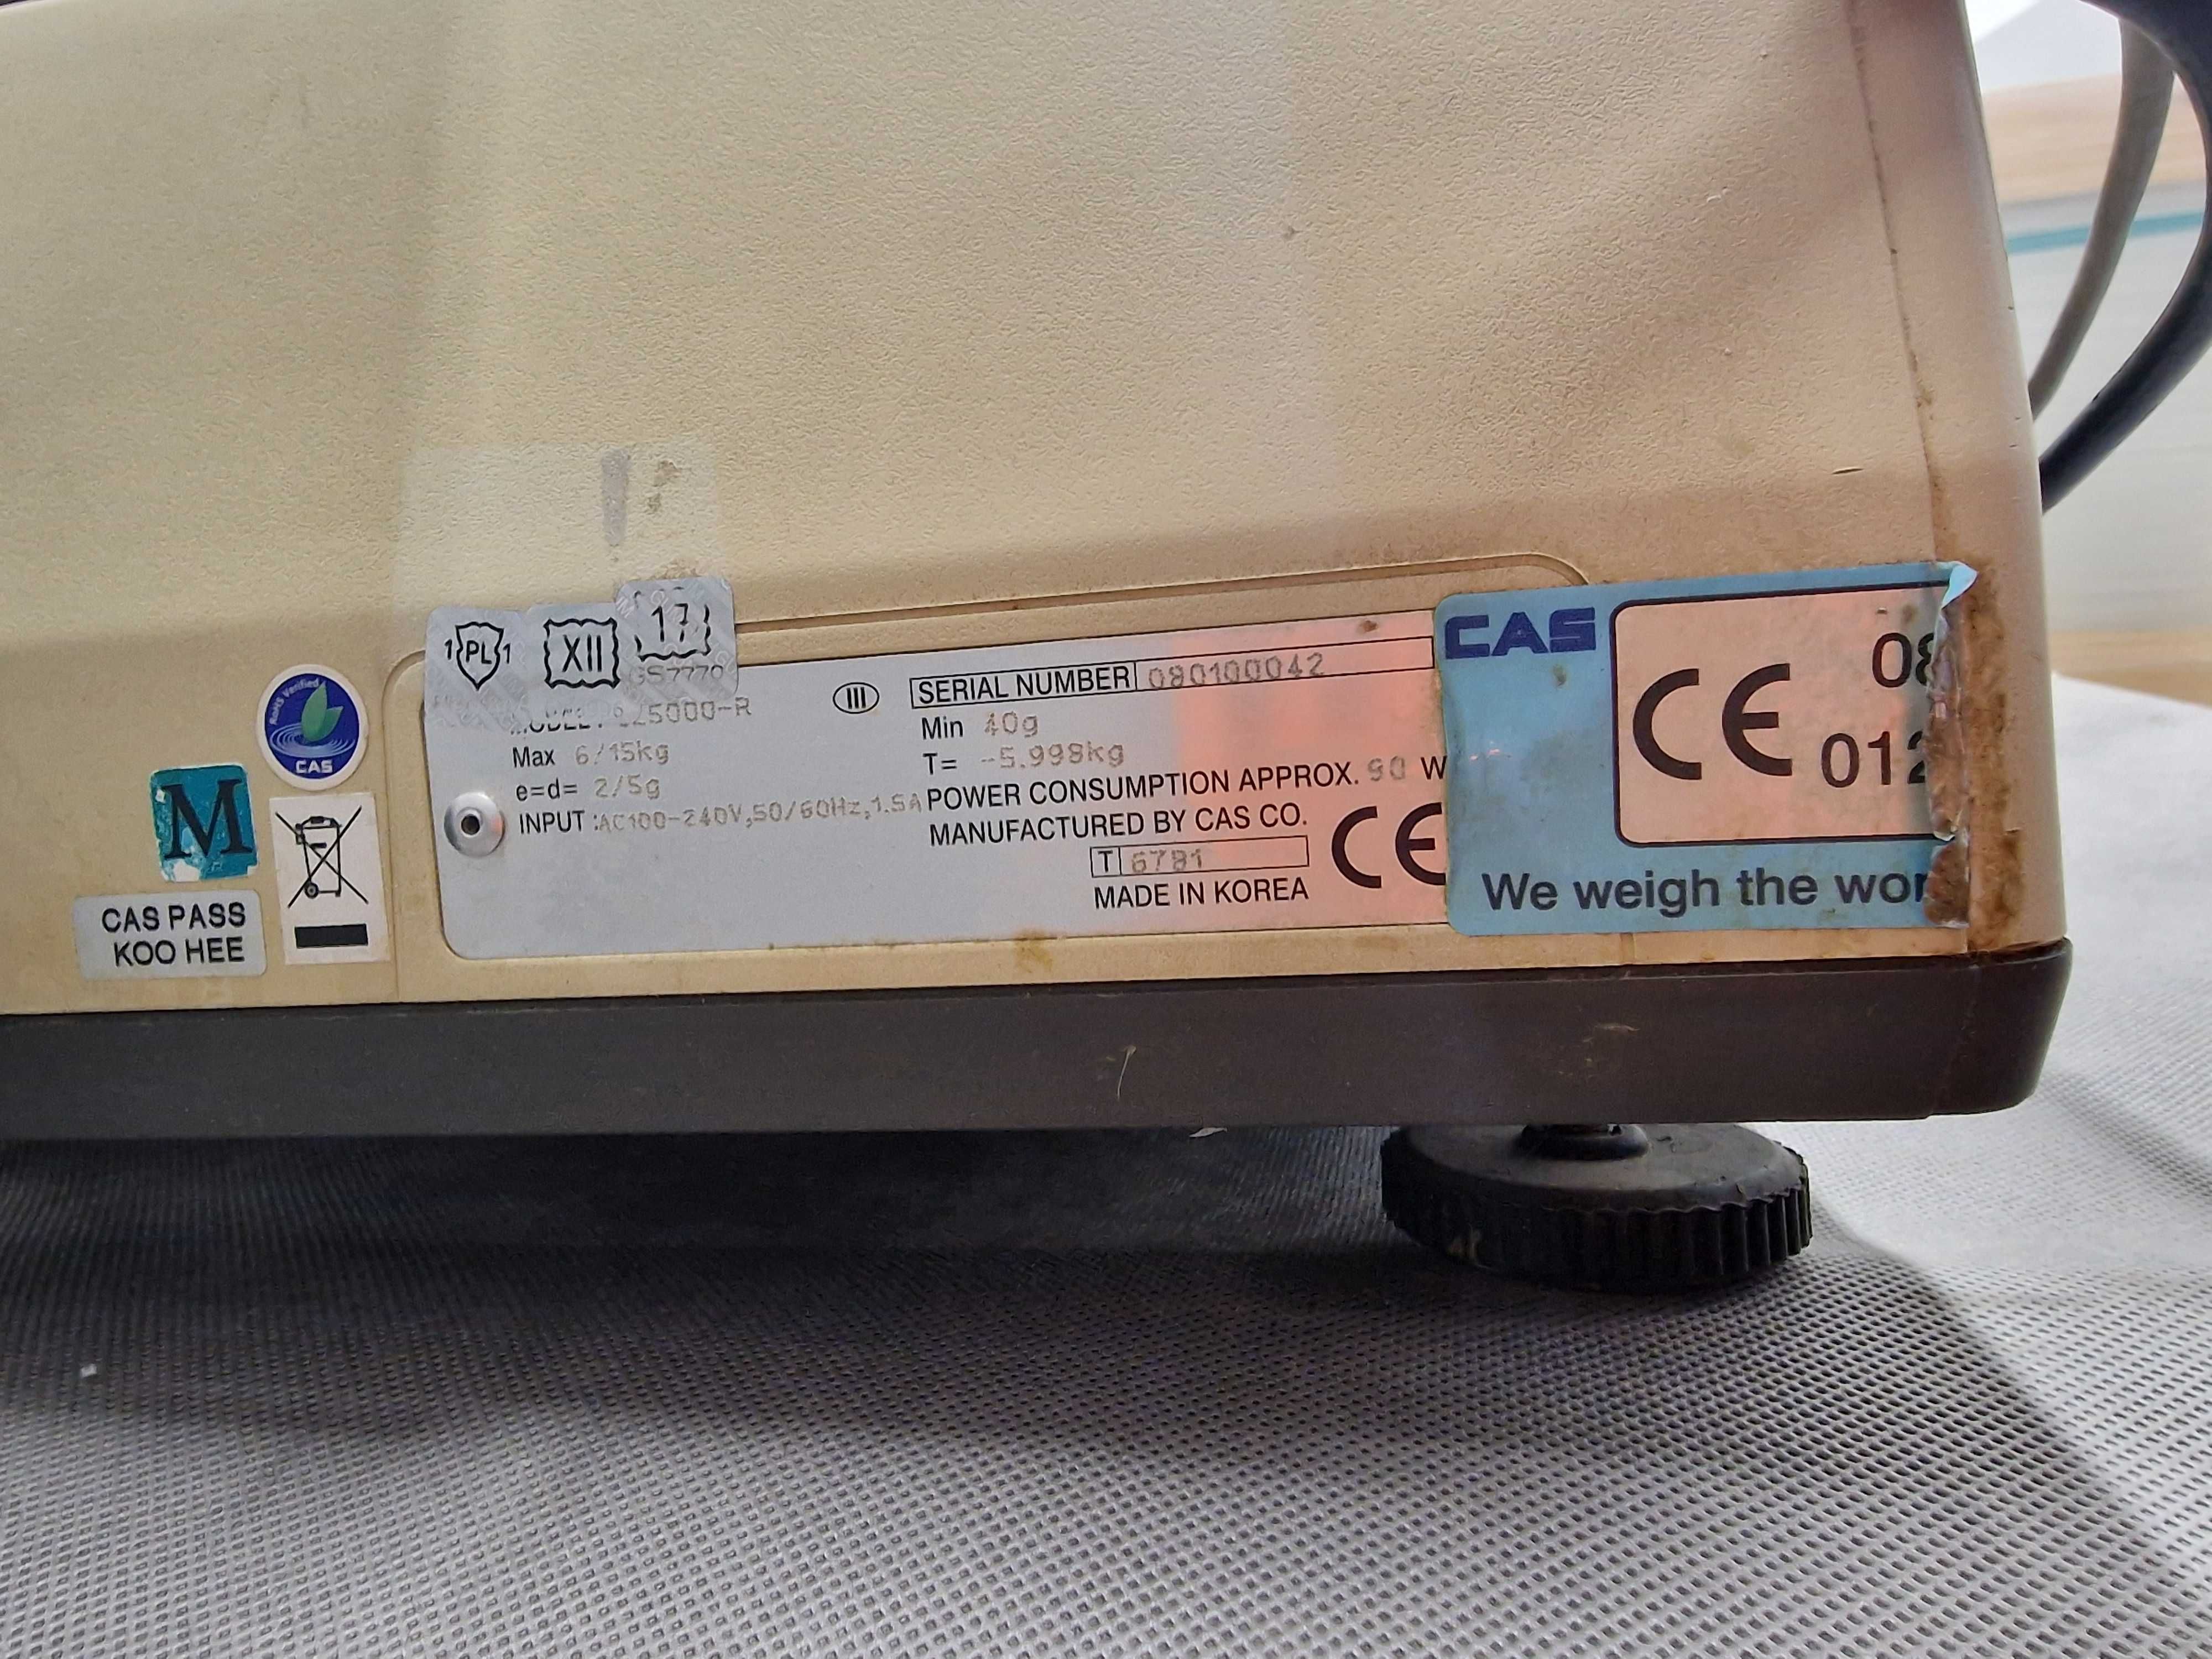 Waga z drukarką CAS CL5000-R waga etykietująca sklepowa